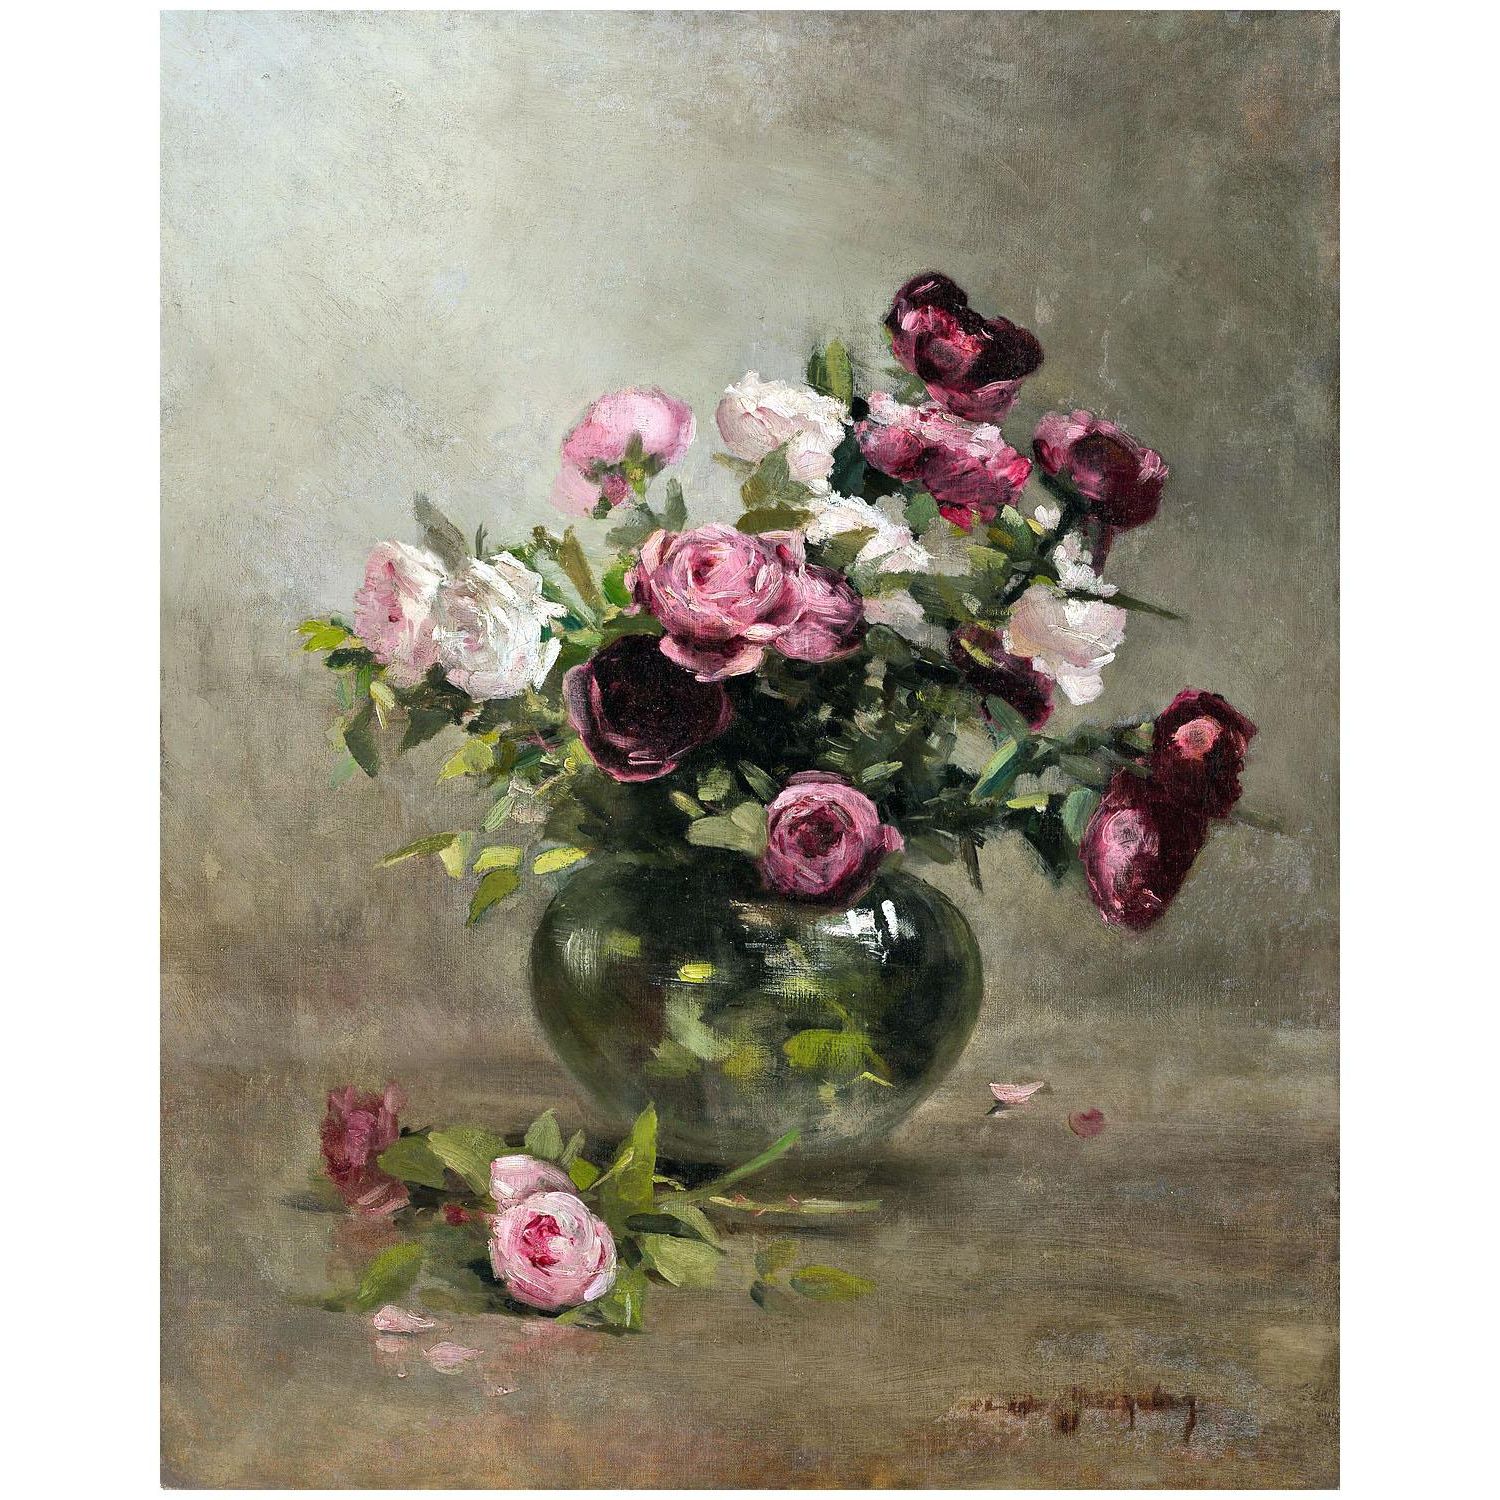 Eva Gonzales. Vase de roses. 1880. Minneapolis Institute of Art